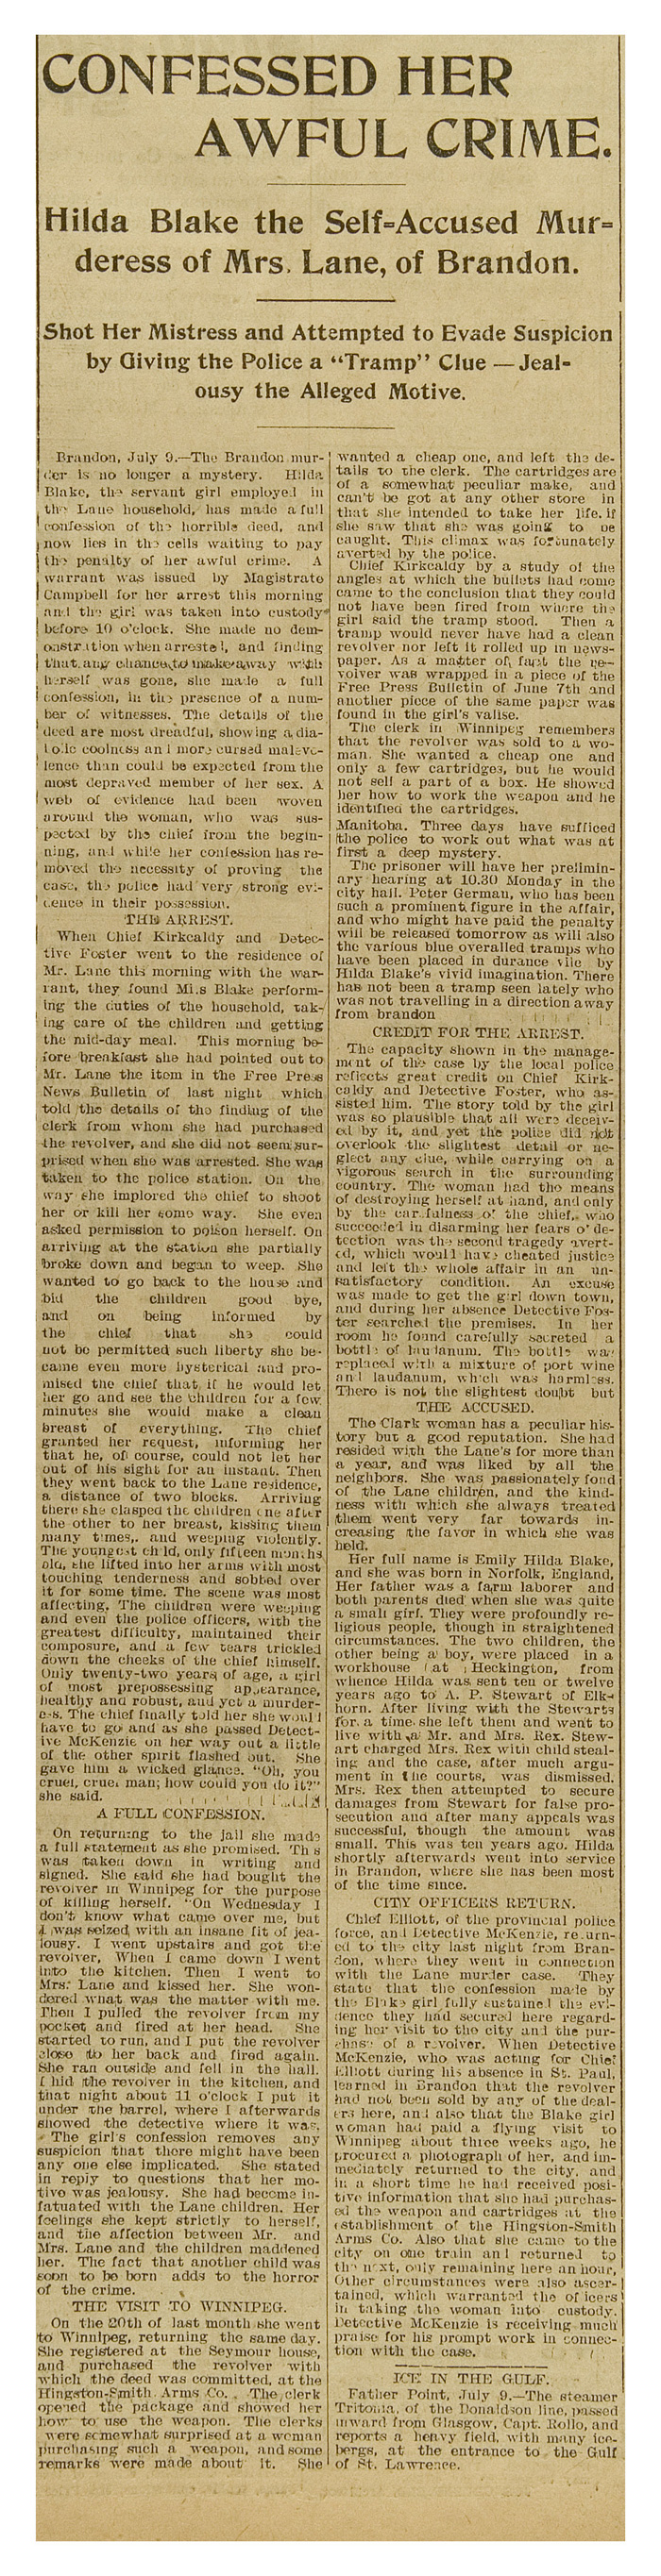 Manitoba Morning Free Press Article,  10 July, 1899